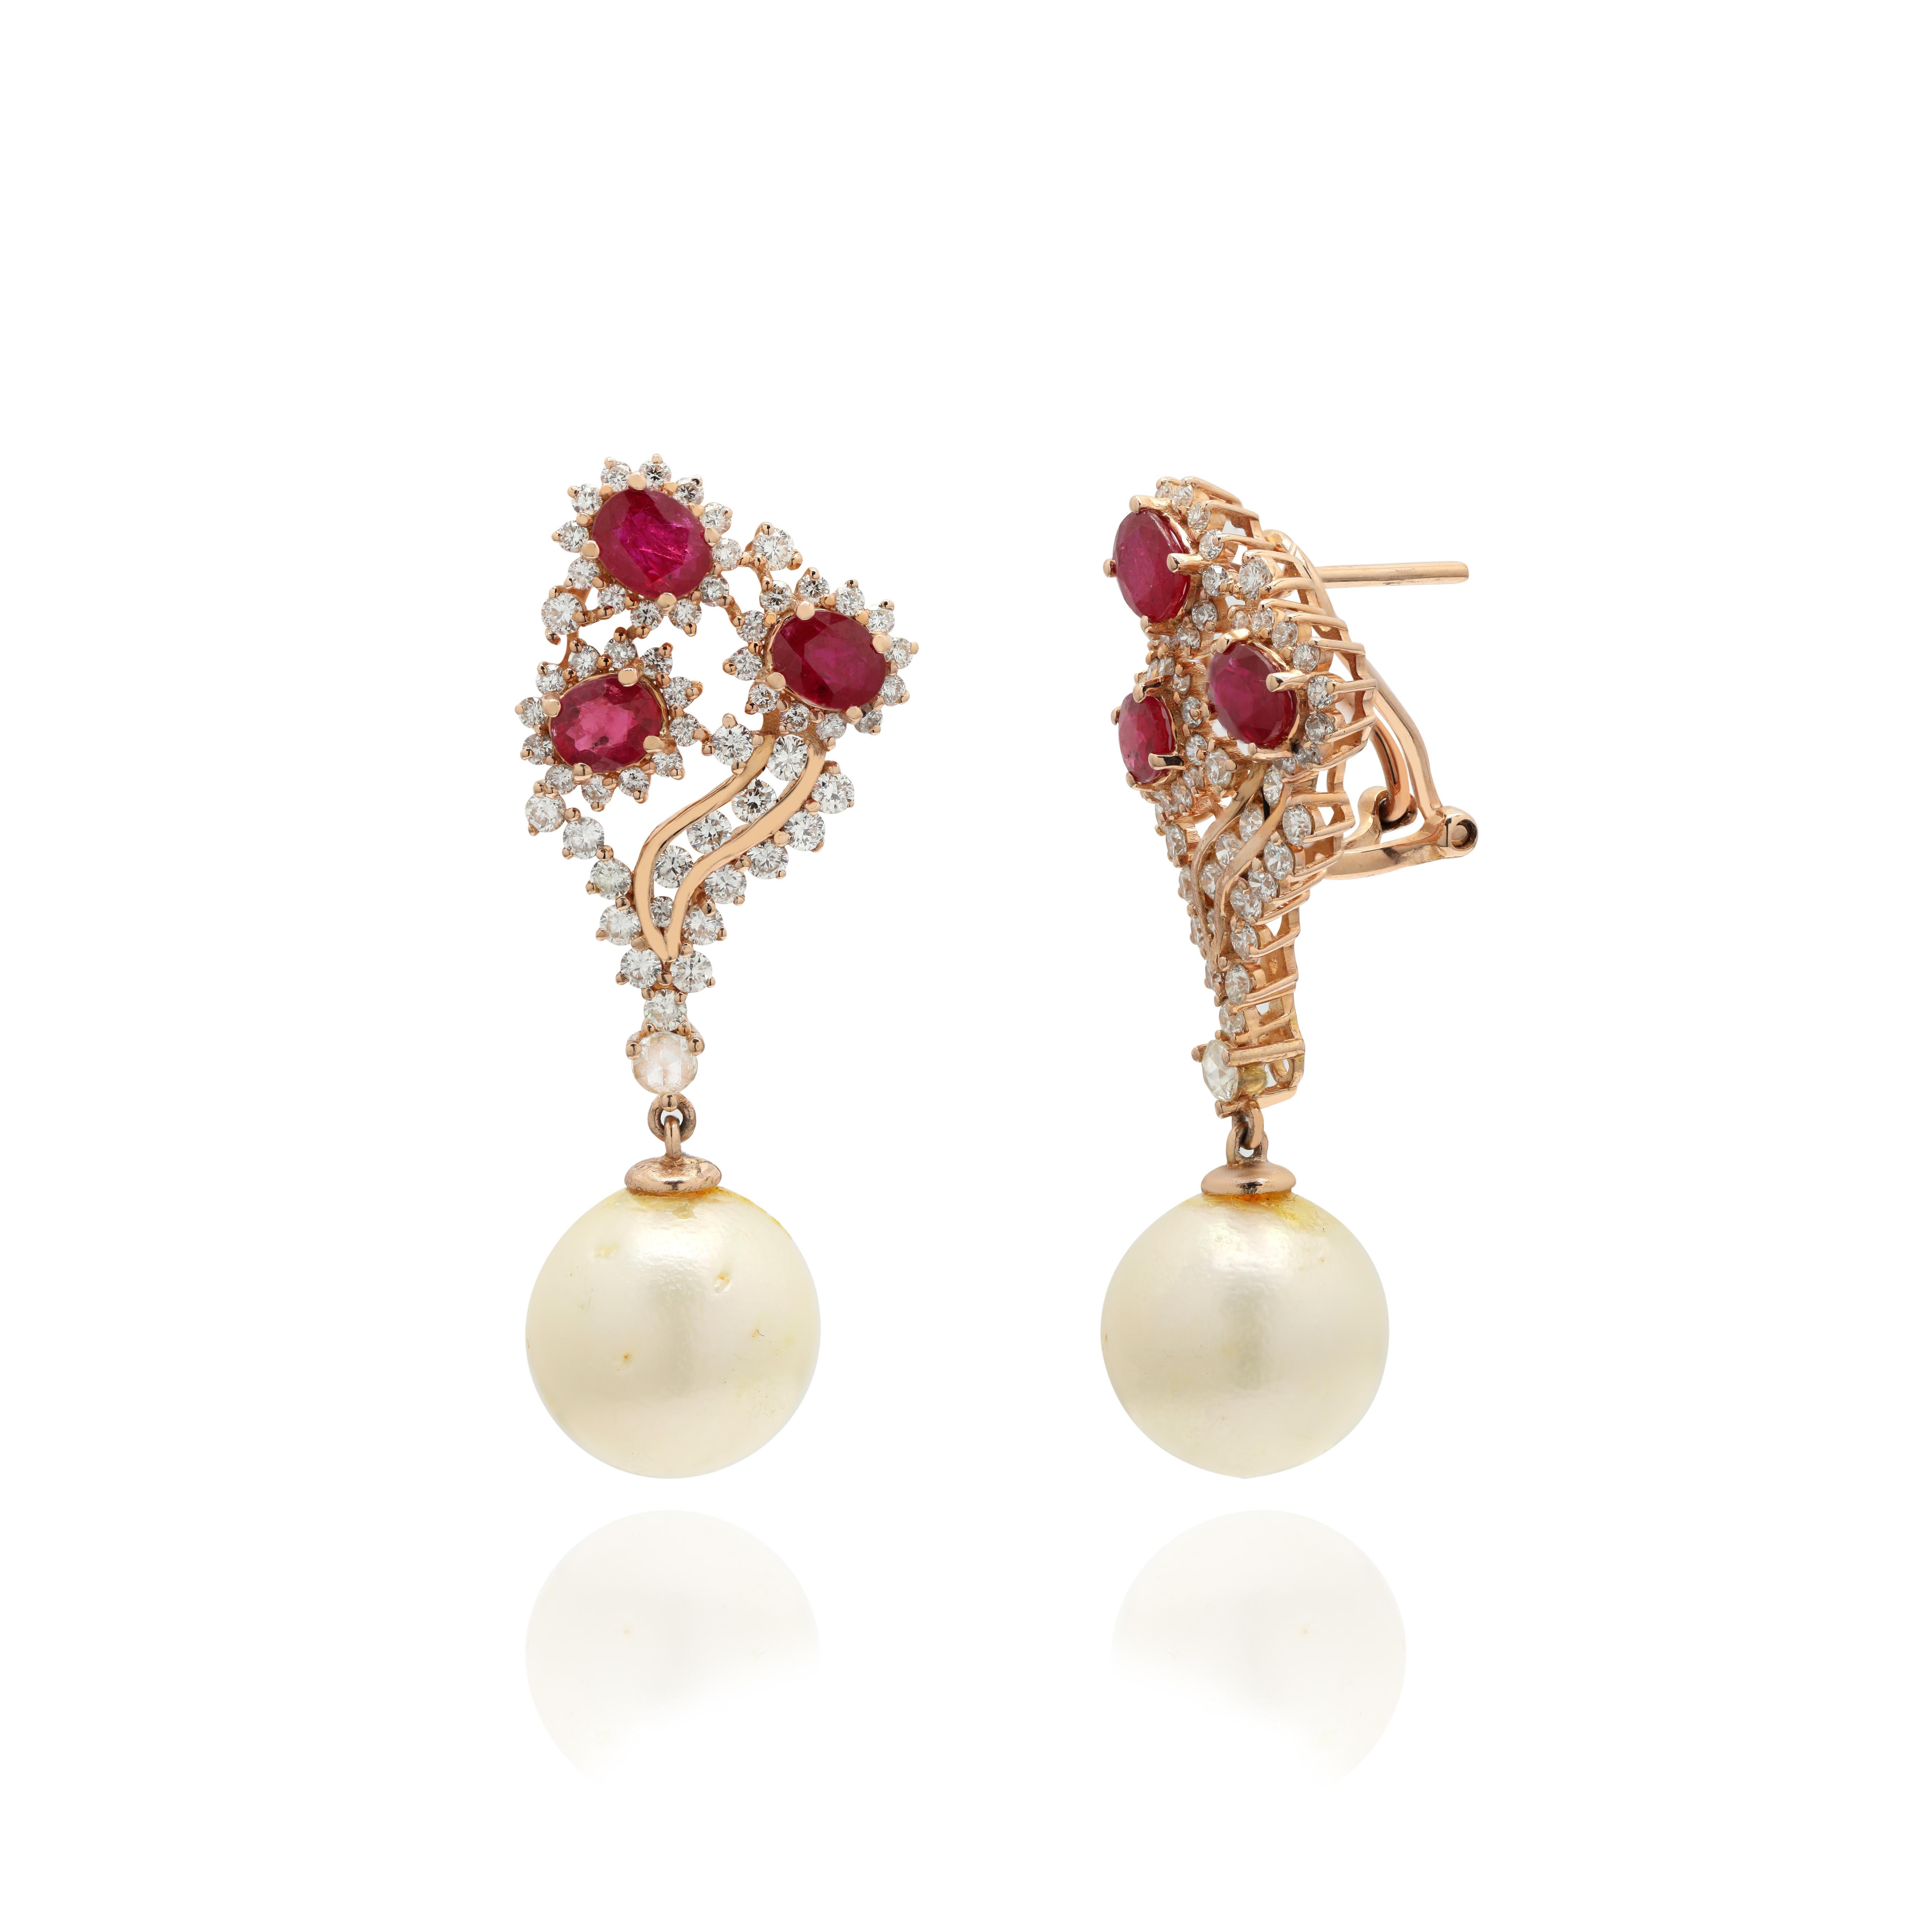 Ohrringe mit Rubinen, Perlen und Diamanten, die Ihren Look unterstreichen. Diese Ohrringe sorgen für einen funkelnden, luxuriösen Look mit oval und rund geschliffenen Edelsteinen.
Wenn Sie einen Hang zu einzigartigen Stilen haben, ist dieses